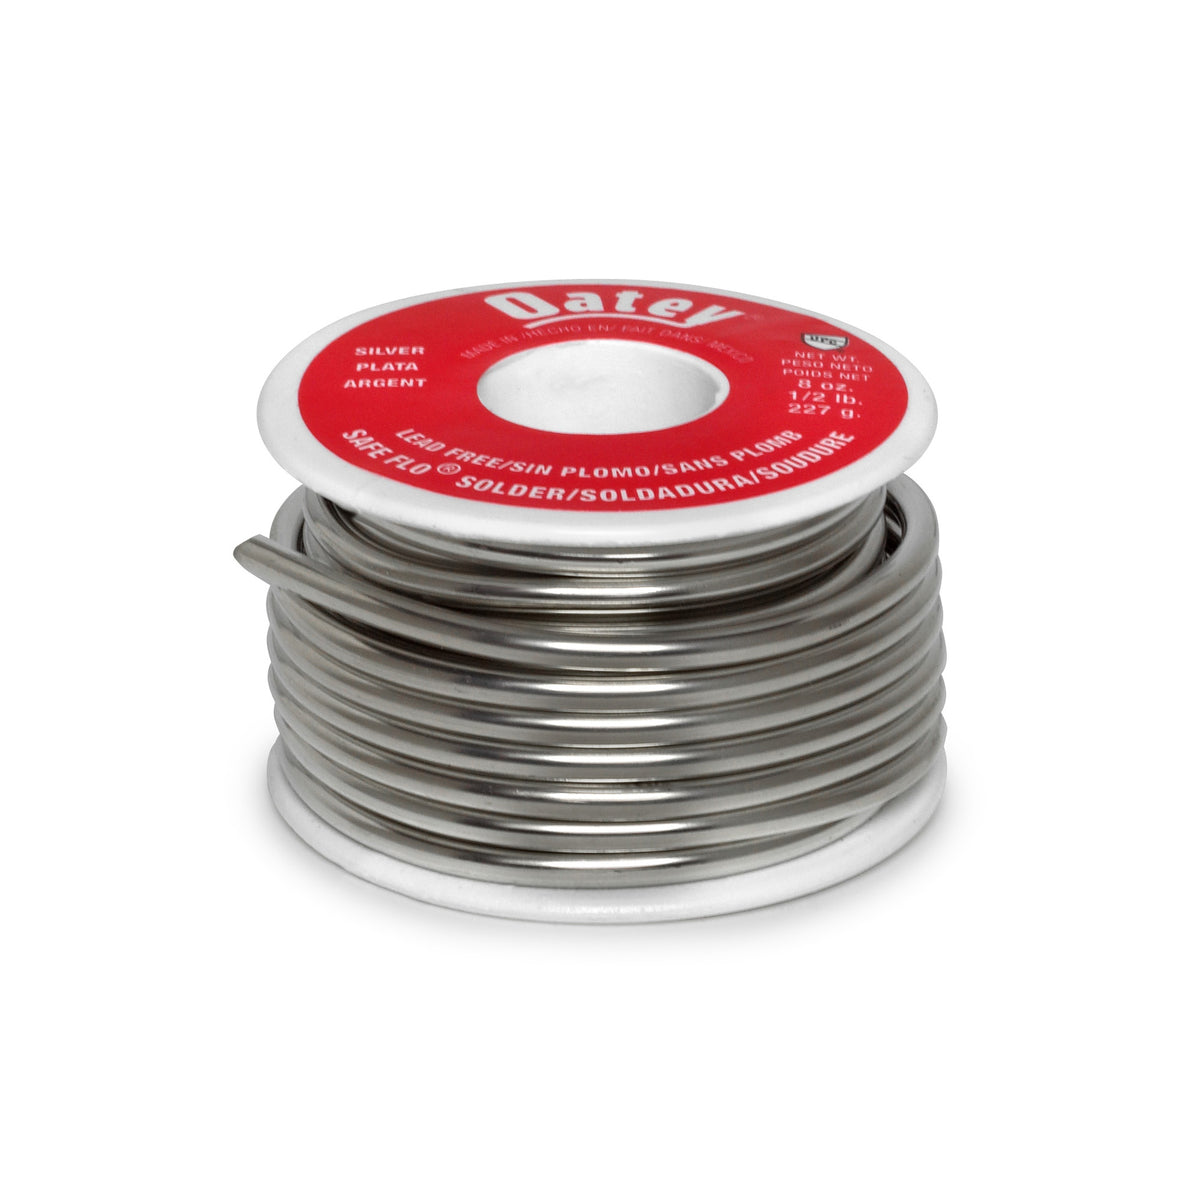 Oatey 29024 Safe-Flo Lead Free Plumbing Wire Solder 1/2 lbs, Silver